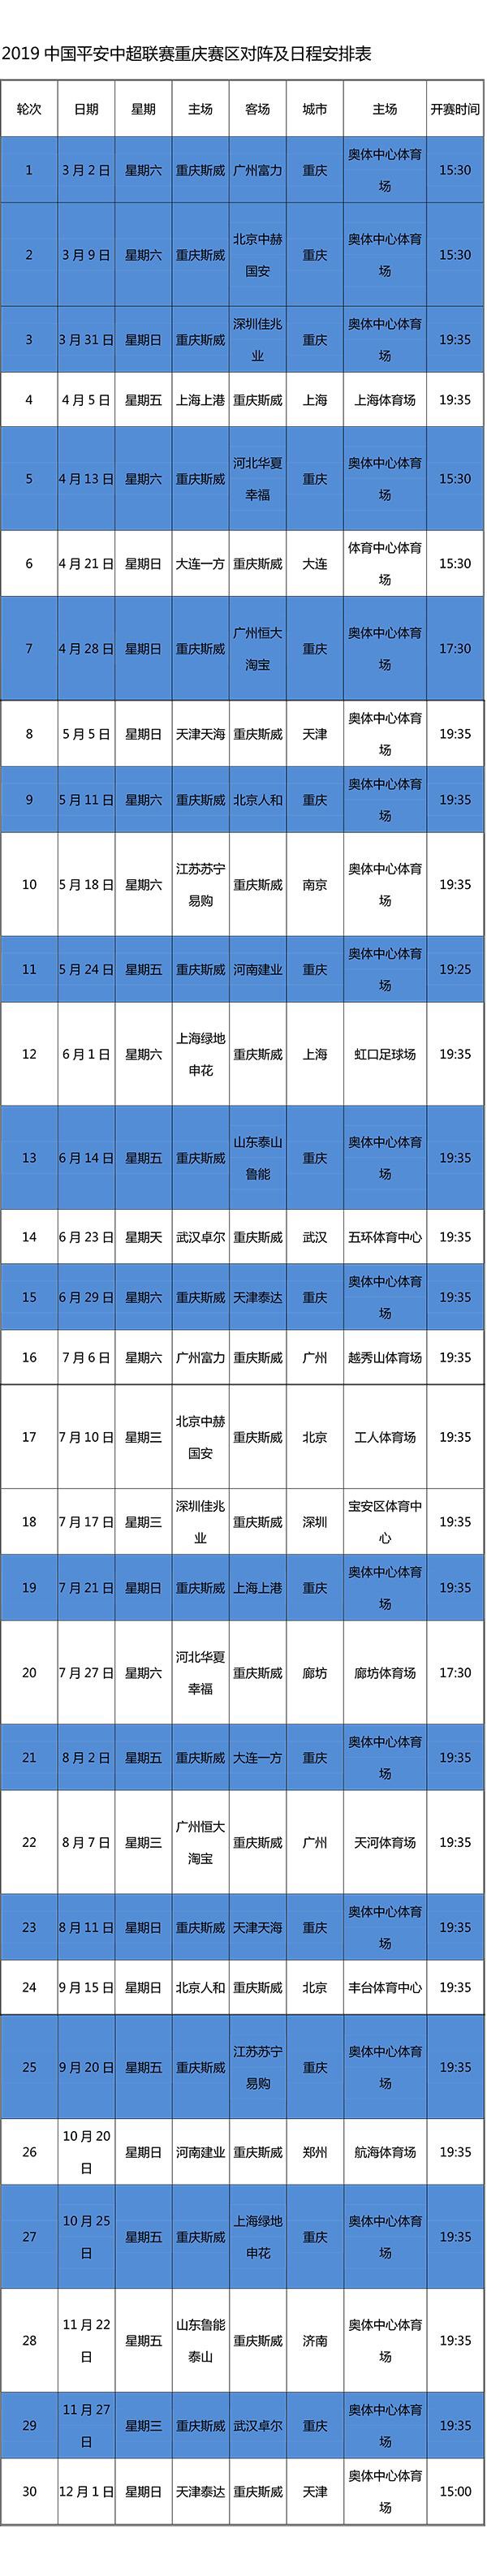 2019赛季重庆当代力帆足球俱乐部重庆斯威球队重庆斯威vs广州富力